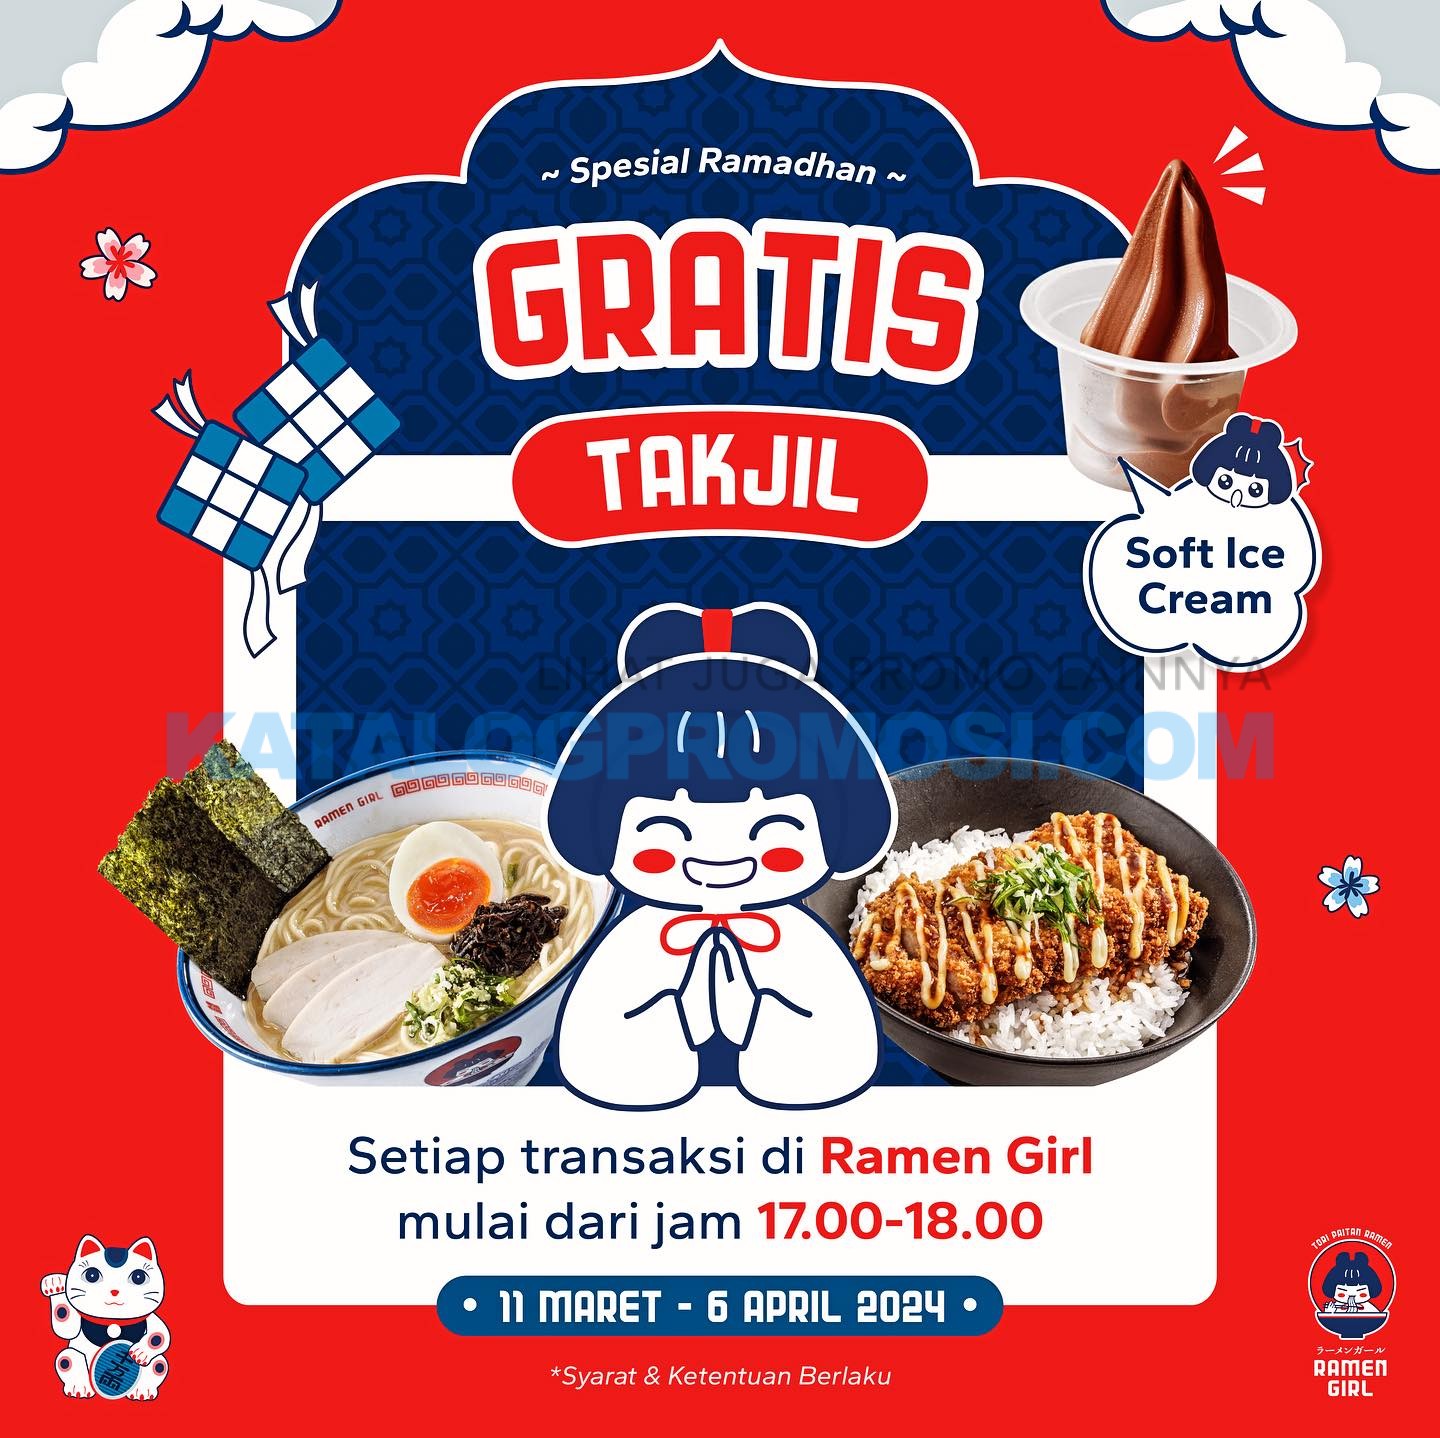 Promo RAMEN GIRL Spesial Ramadhan - Gratis Takjil Soft Ice Cream berlaku tanggal 11 MAret - 06 April 2024 di jam 17.00 - 18.00 (selama persediaan masih ada)